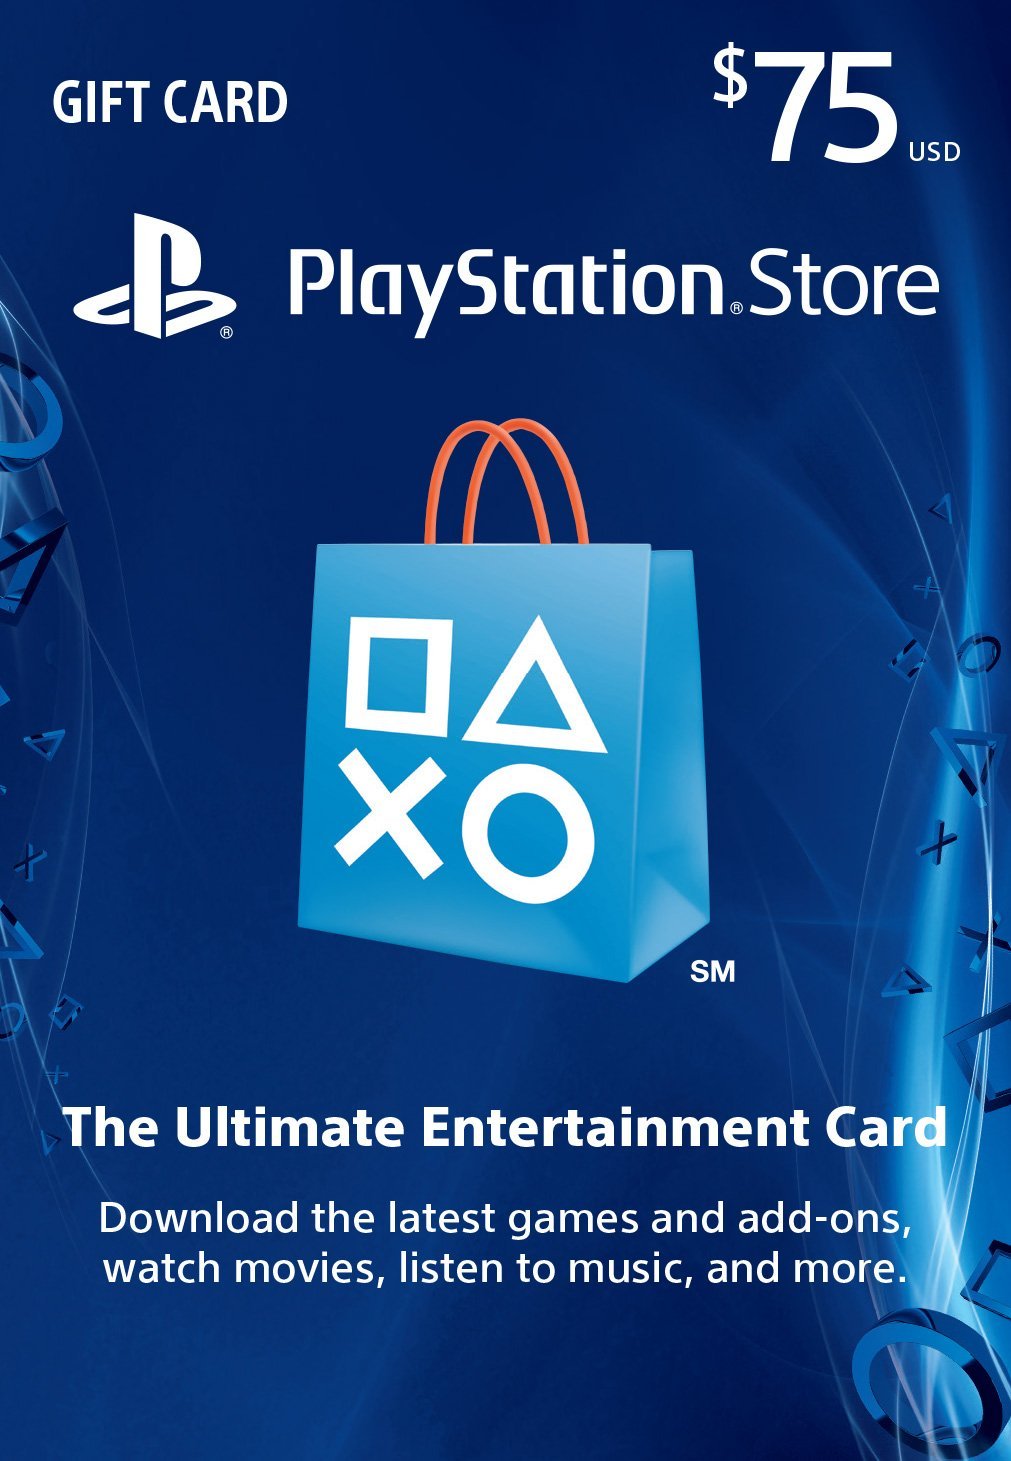 PSN Gift Card Code USA $75 for PS4, PS3, PS Vita